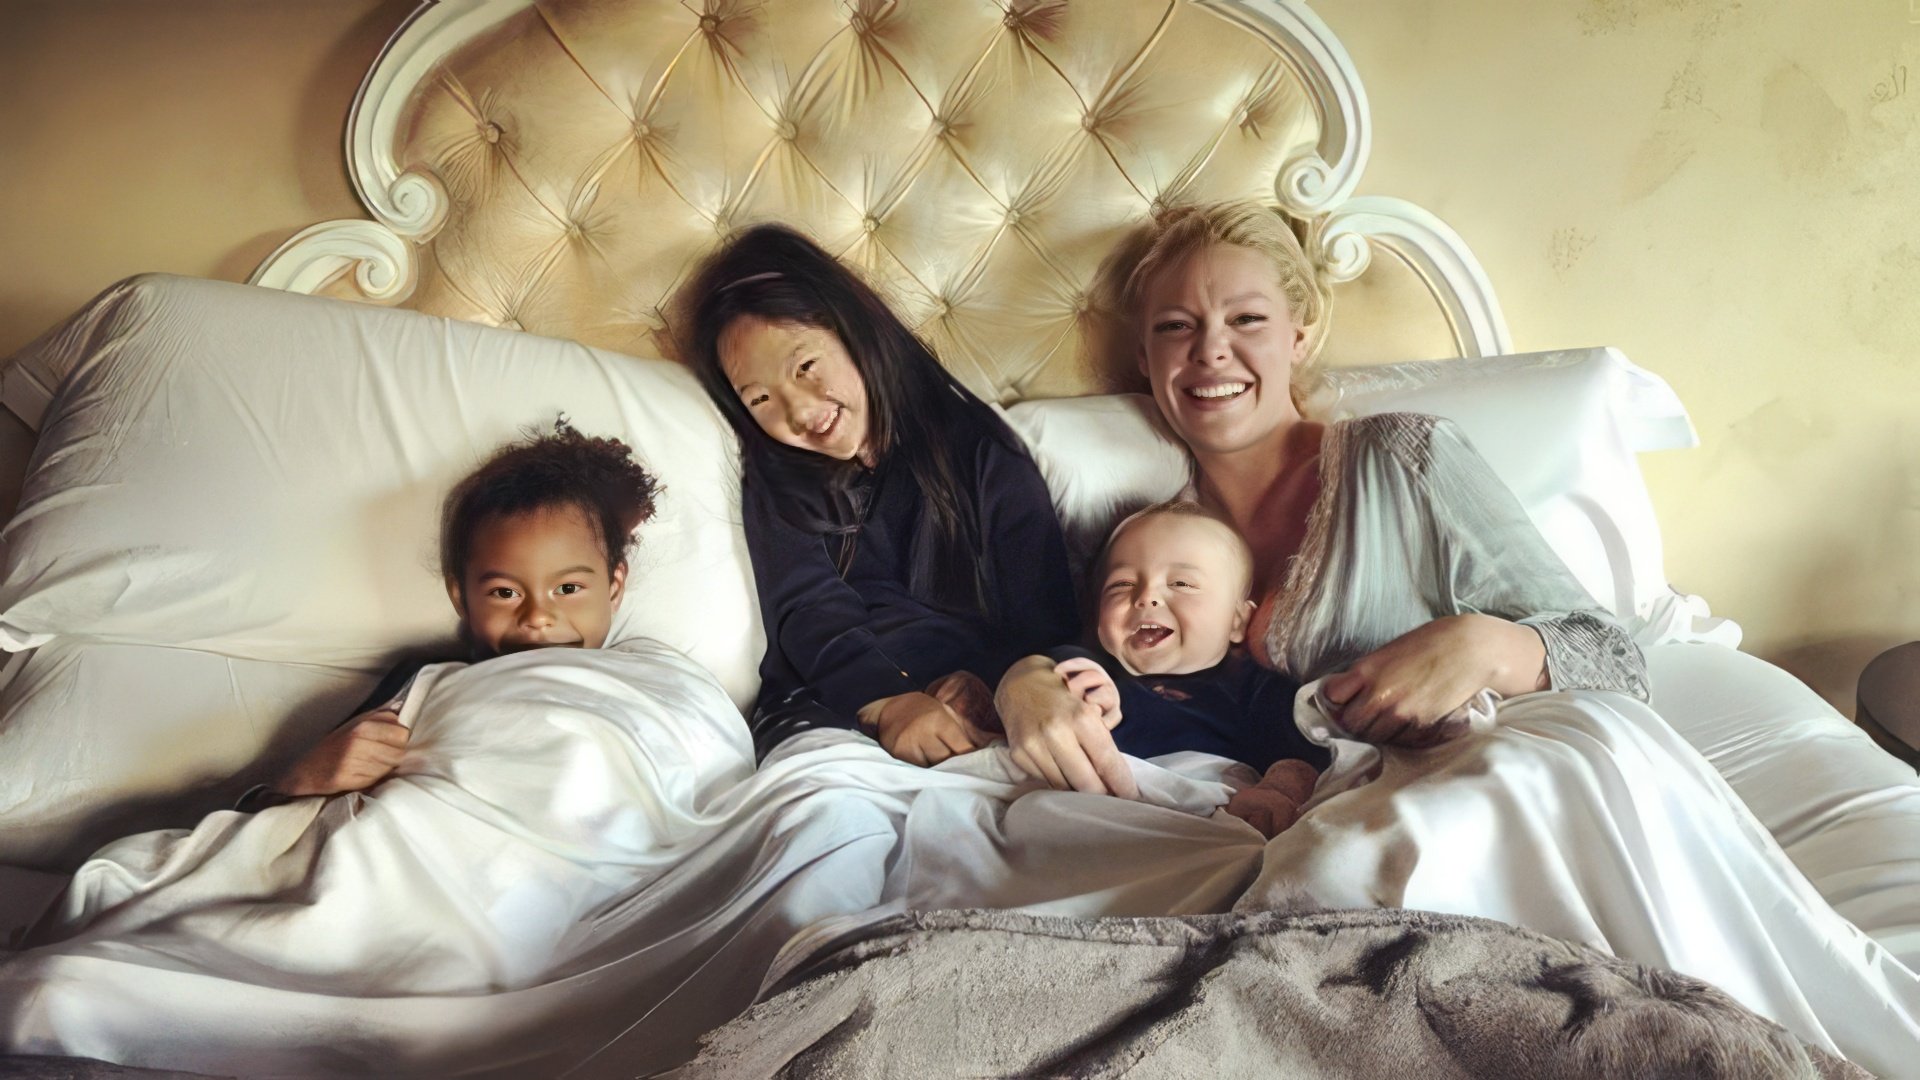 Katherine Heigl with her children